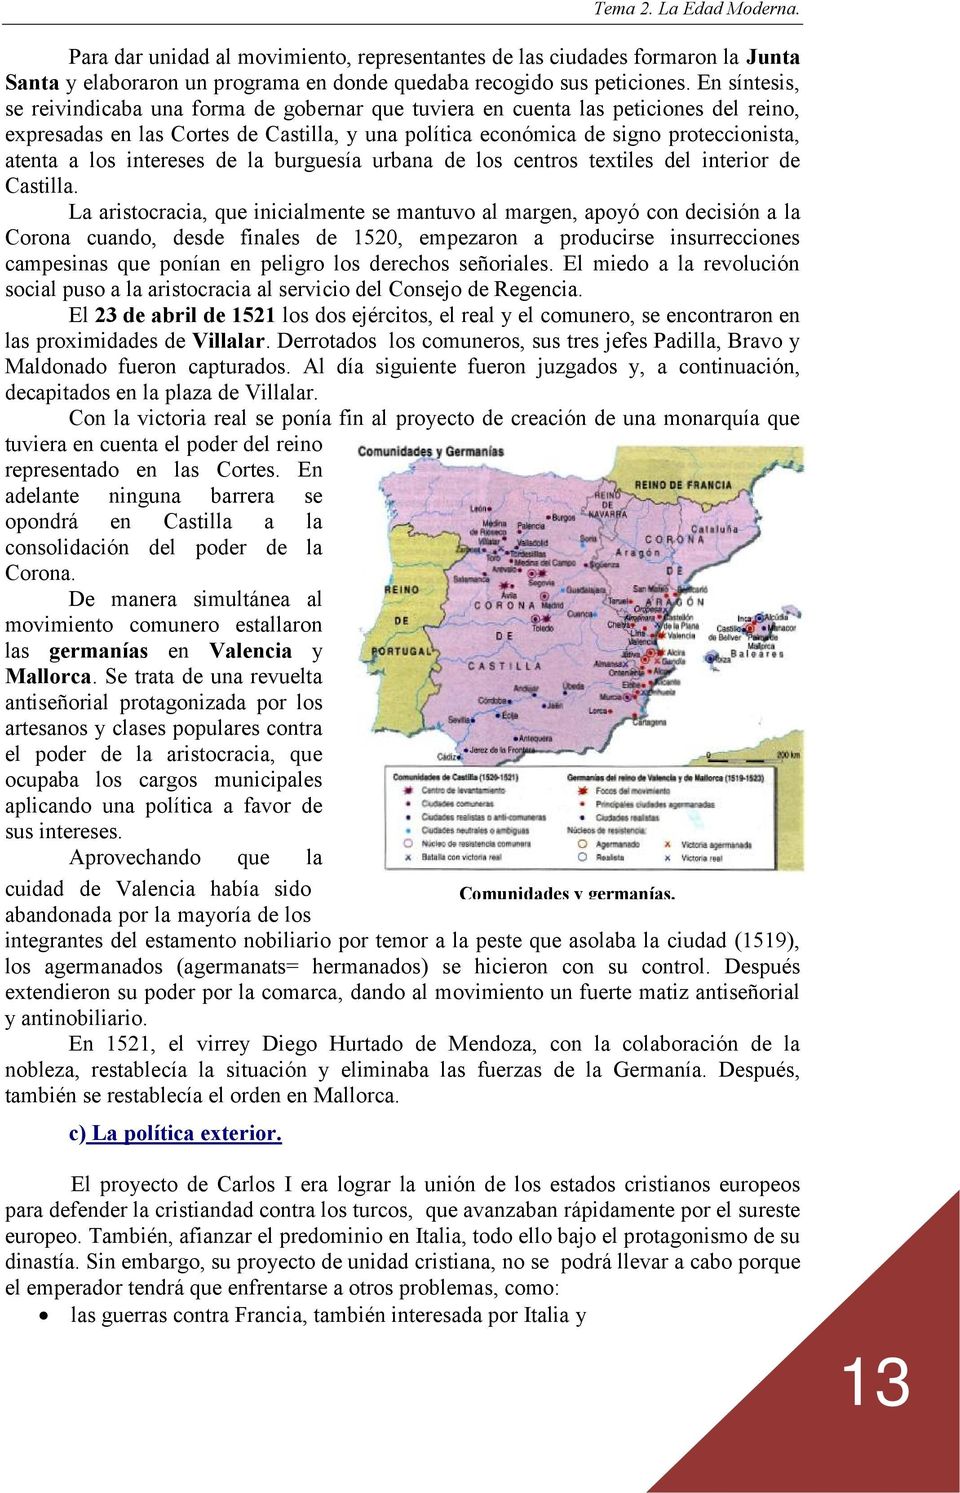 intereses de la burguesía urbana de los centros textiles del interior de Castilla.